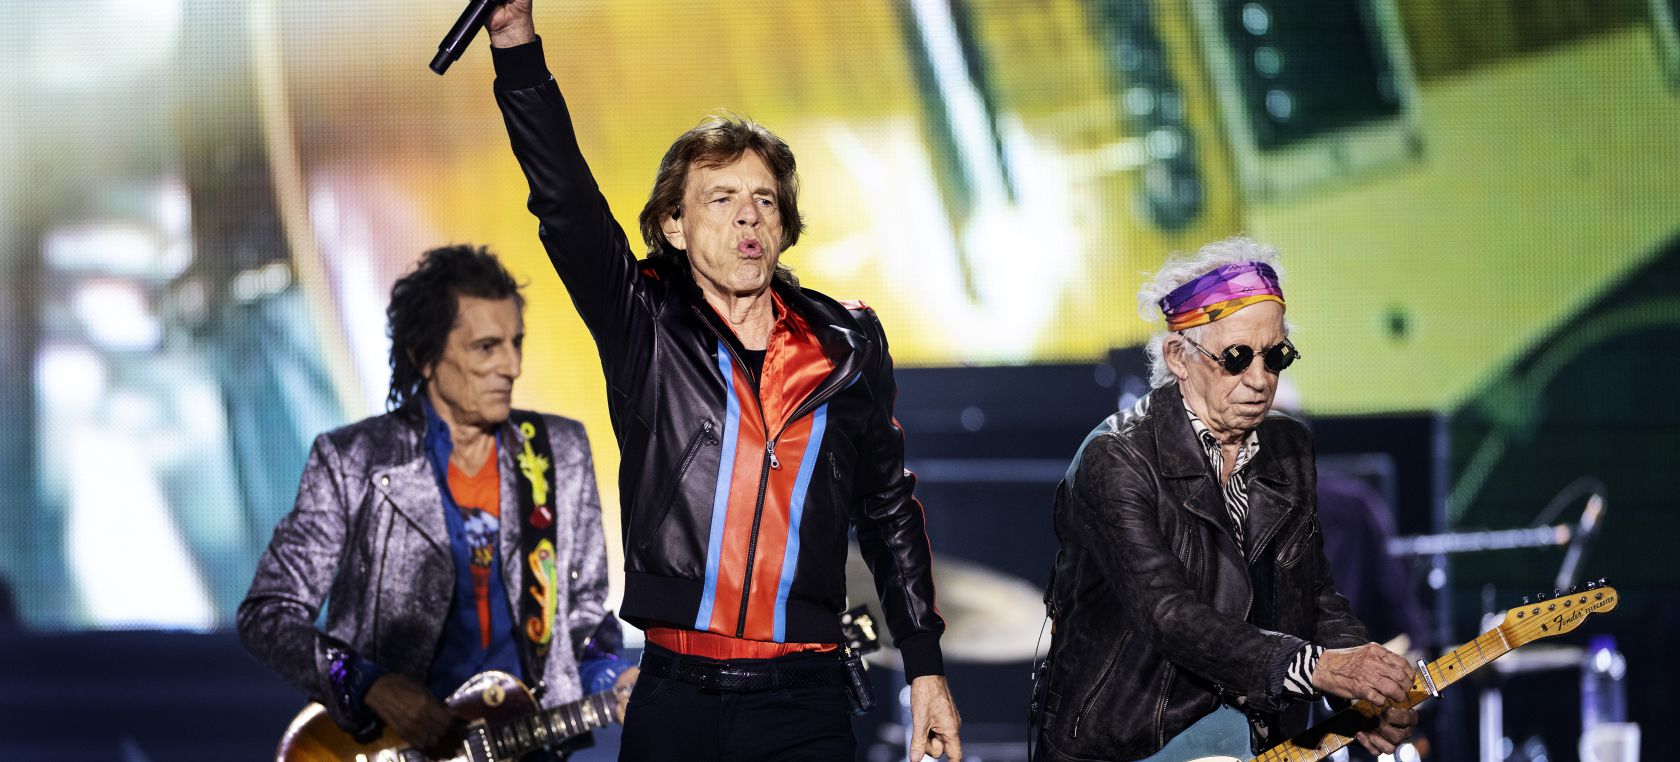 Los Rolling Stones trabajan en disco, el primero con canciones inéditas en 18 años LOS40 Classic | LOS40